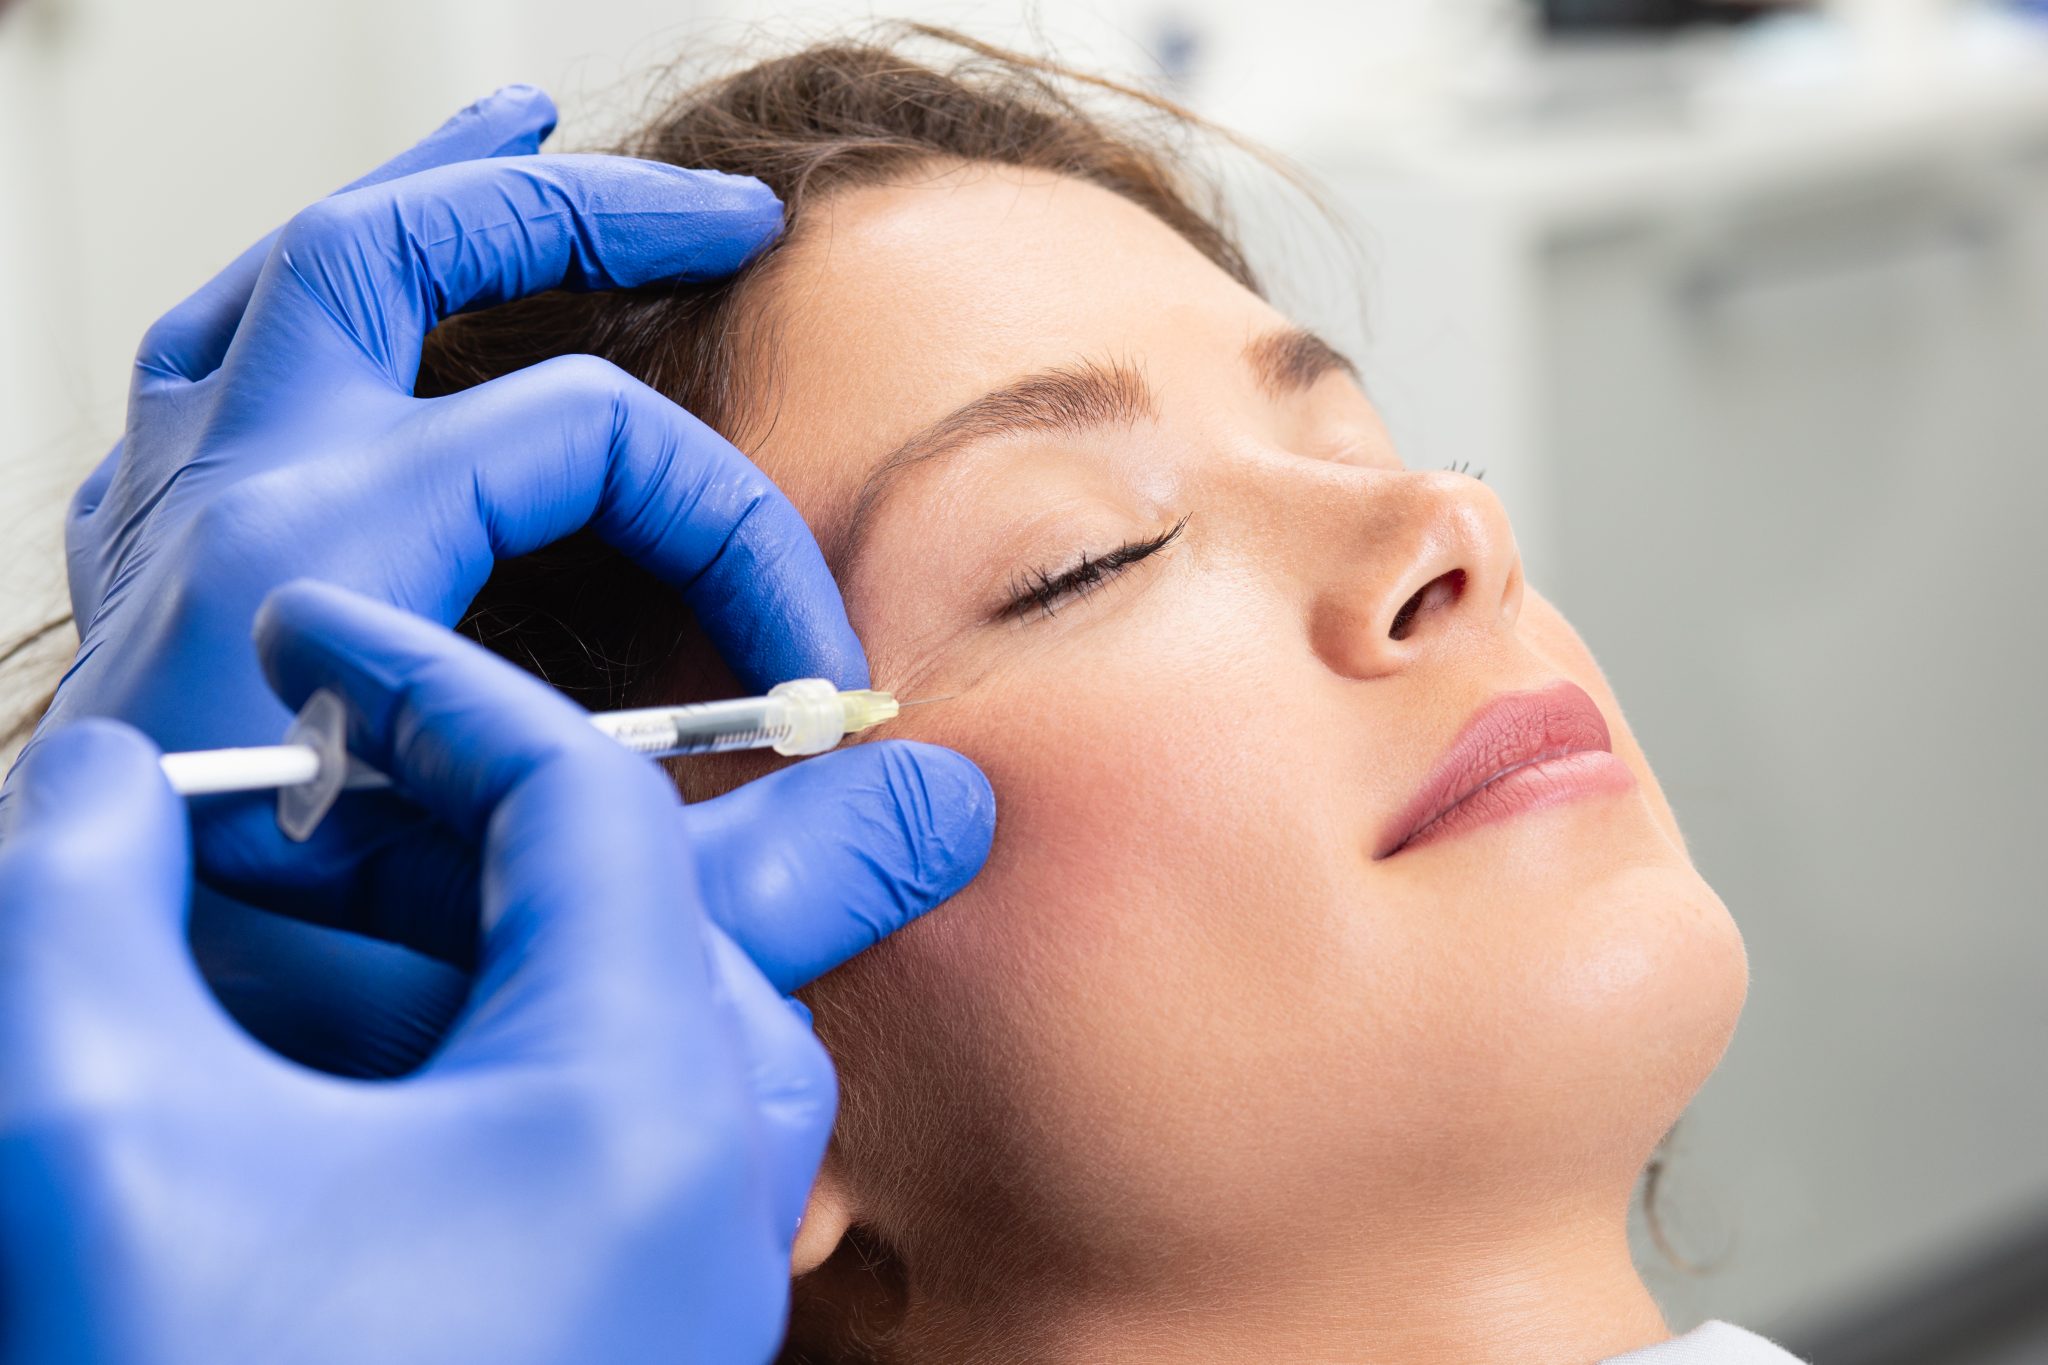 The Top Facial Surgery Procedures